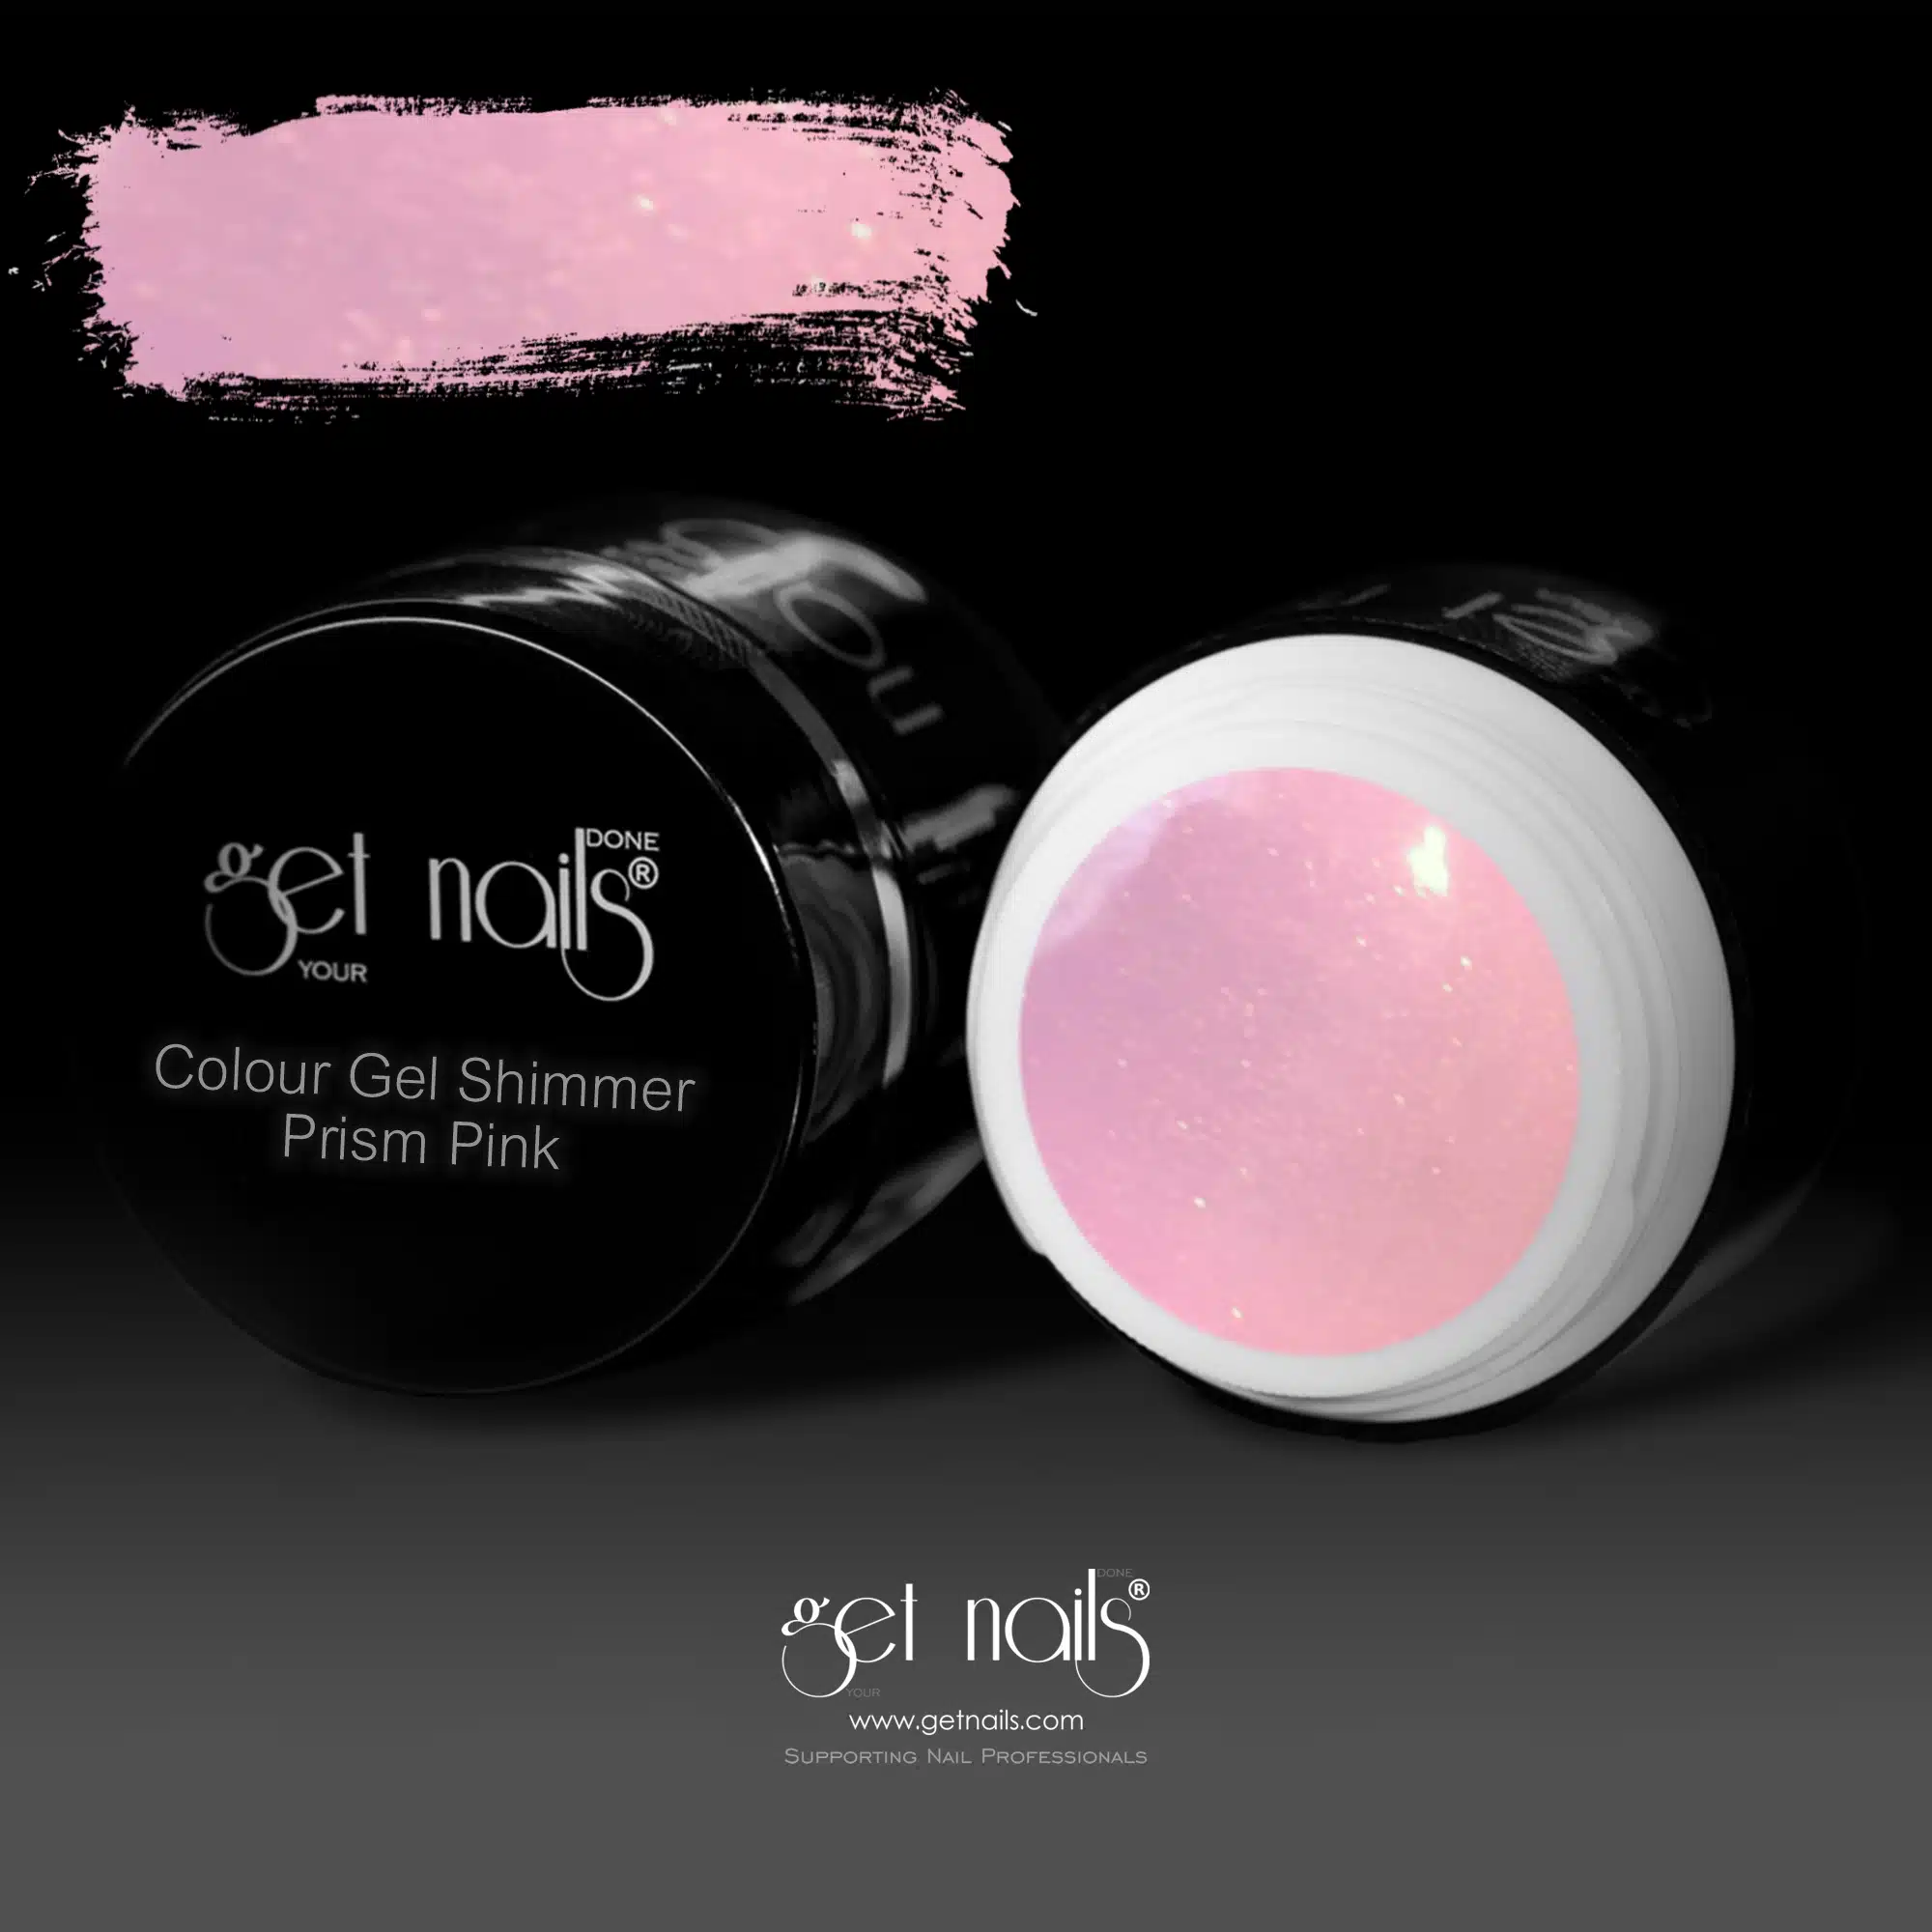 Get Nails Austria - Colour Gel Shimmer Prism Pink 5g